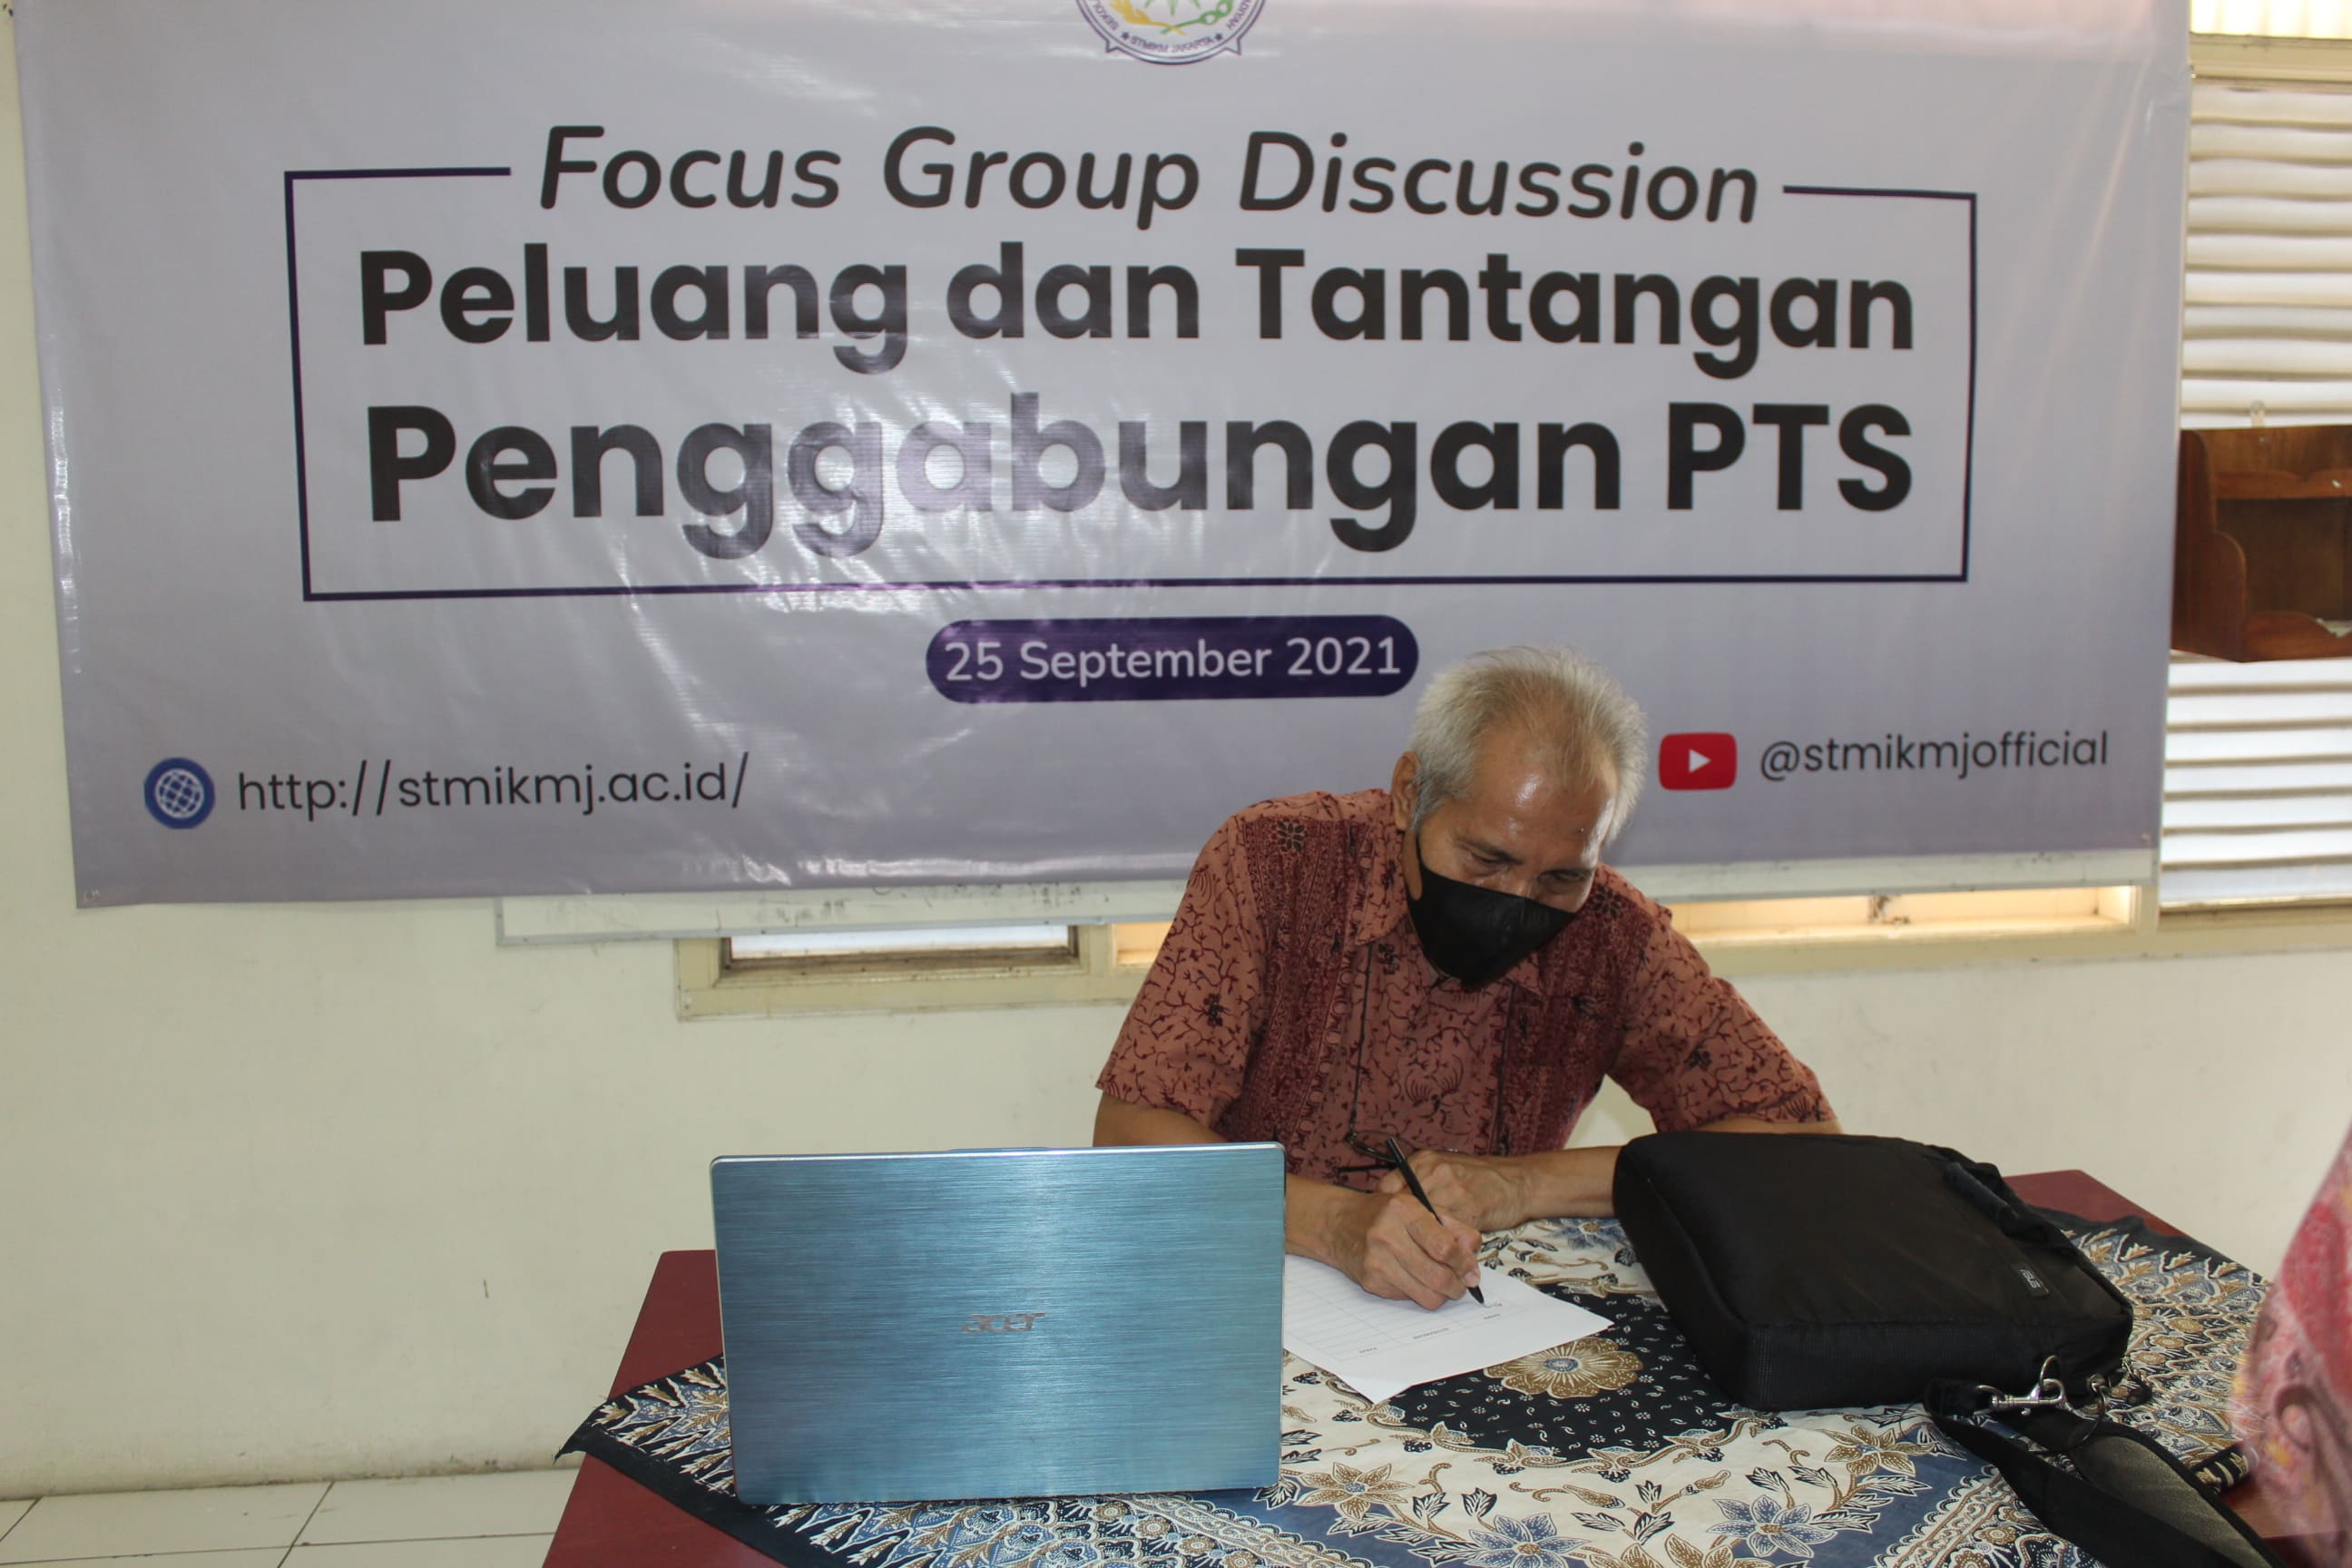 Forum Group Discussion Peluang dan Tantangan Penggabungan PTS 2021